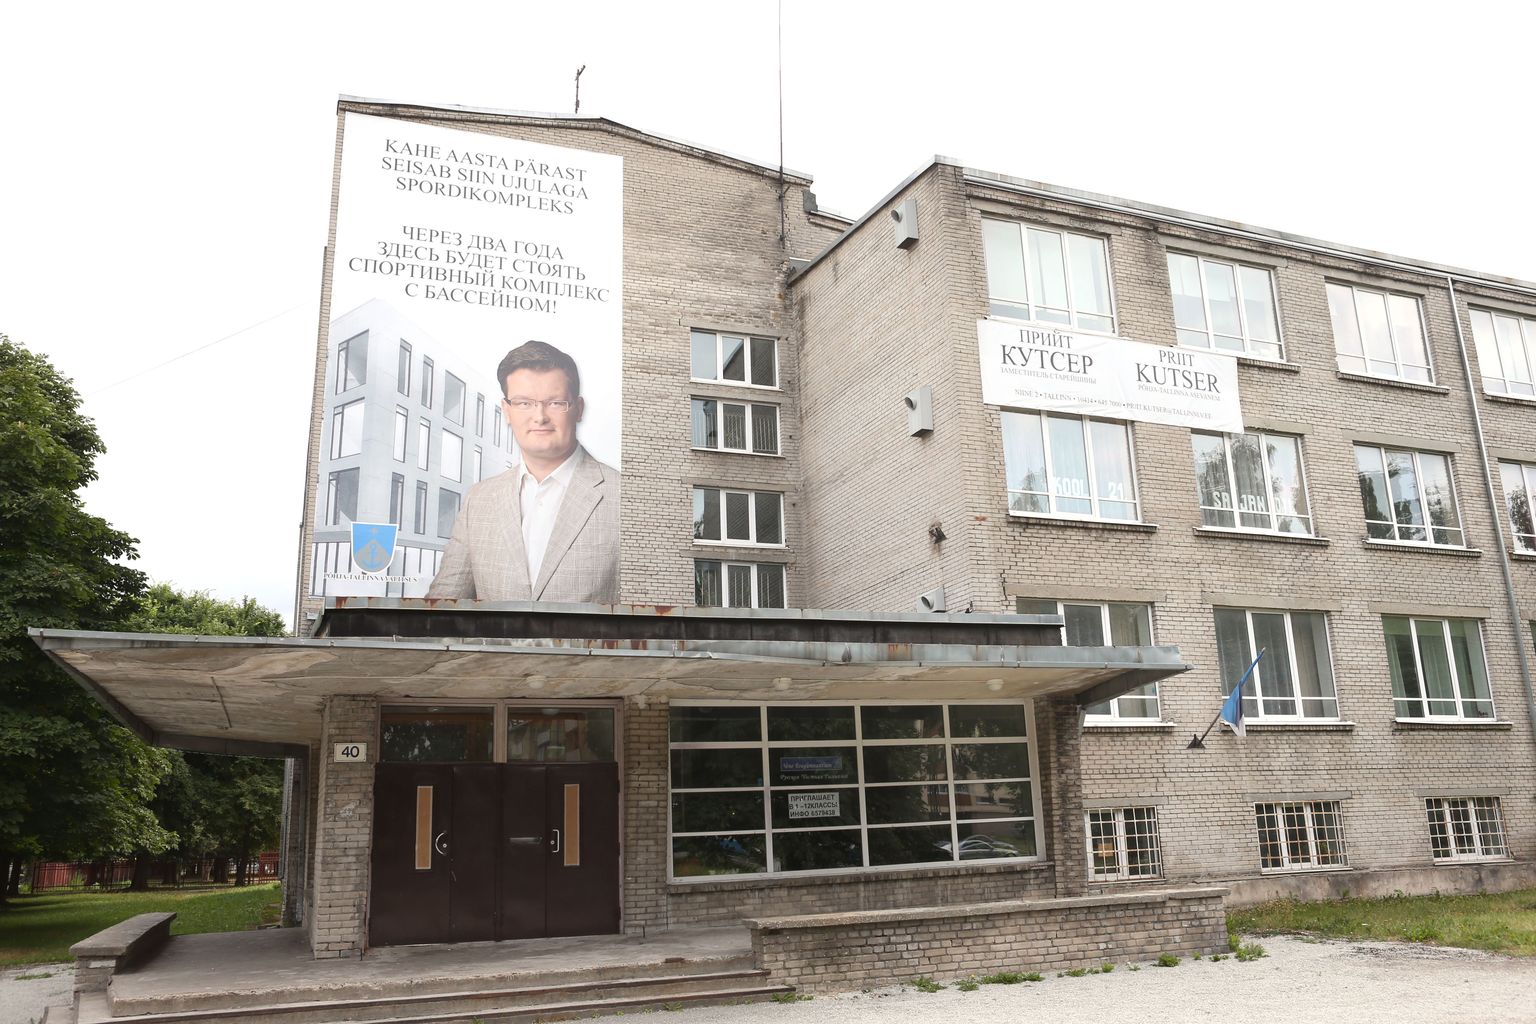 Üks ettekirjutuse saaja oli Põhja-Tallinna vanema asetäitja Priit Kutser, kelle reklaam rippus valimiste eel Vene Eragümnaasiumi fassaadil.